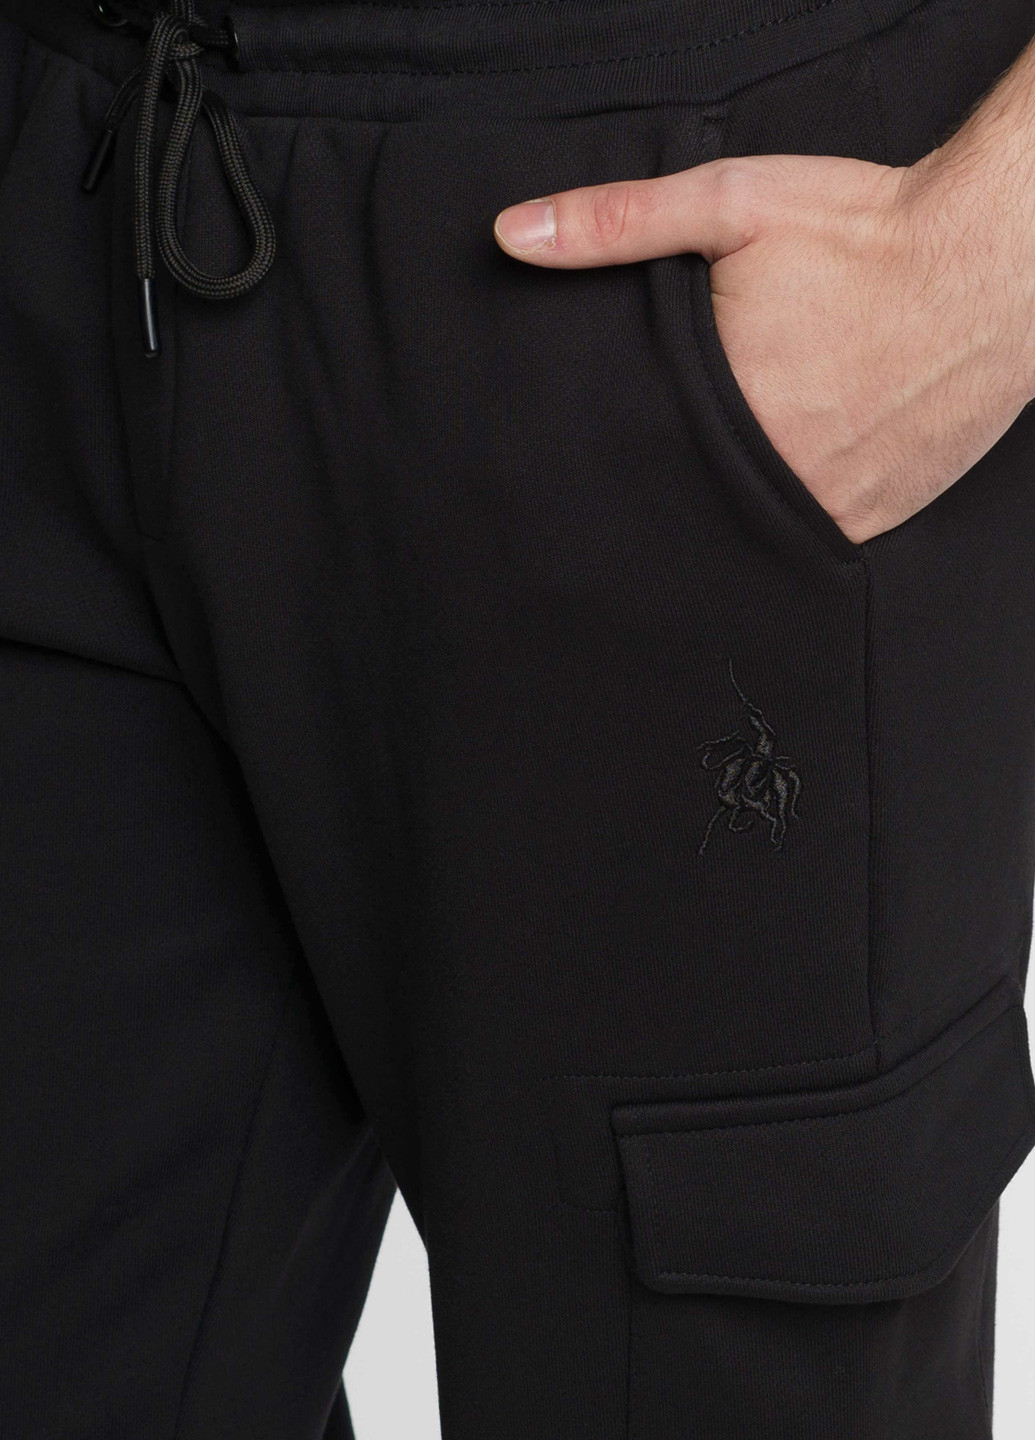 Спортивні штани чоловічі Freedom чорні Arber sportpants sbr-7 (277964704)